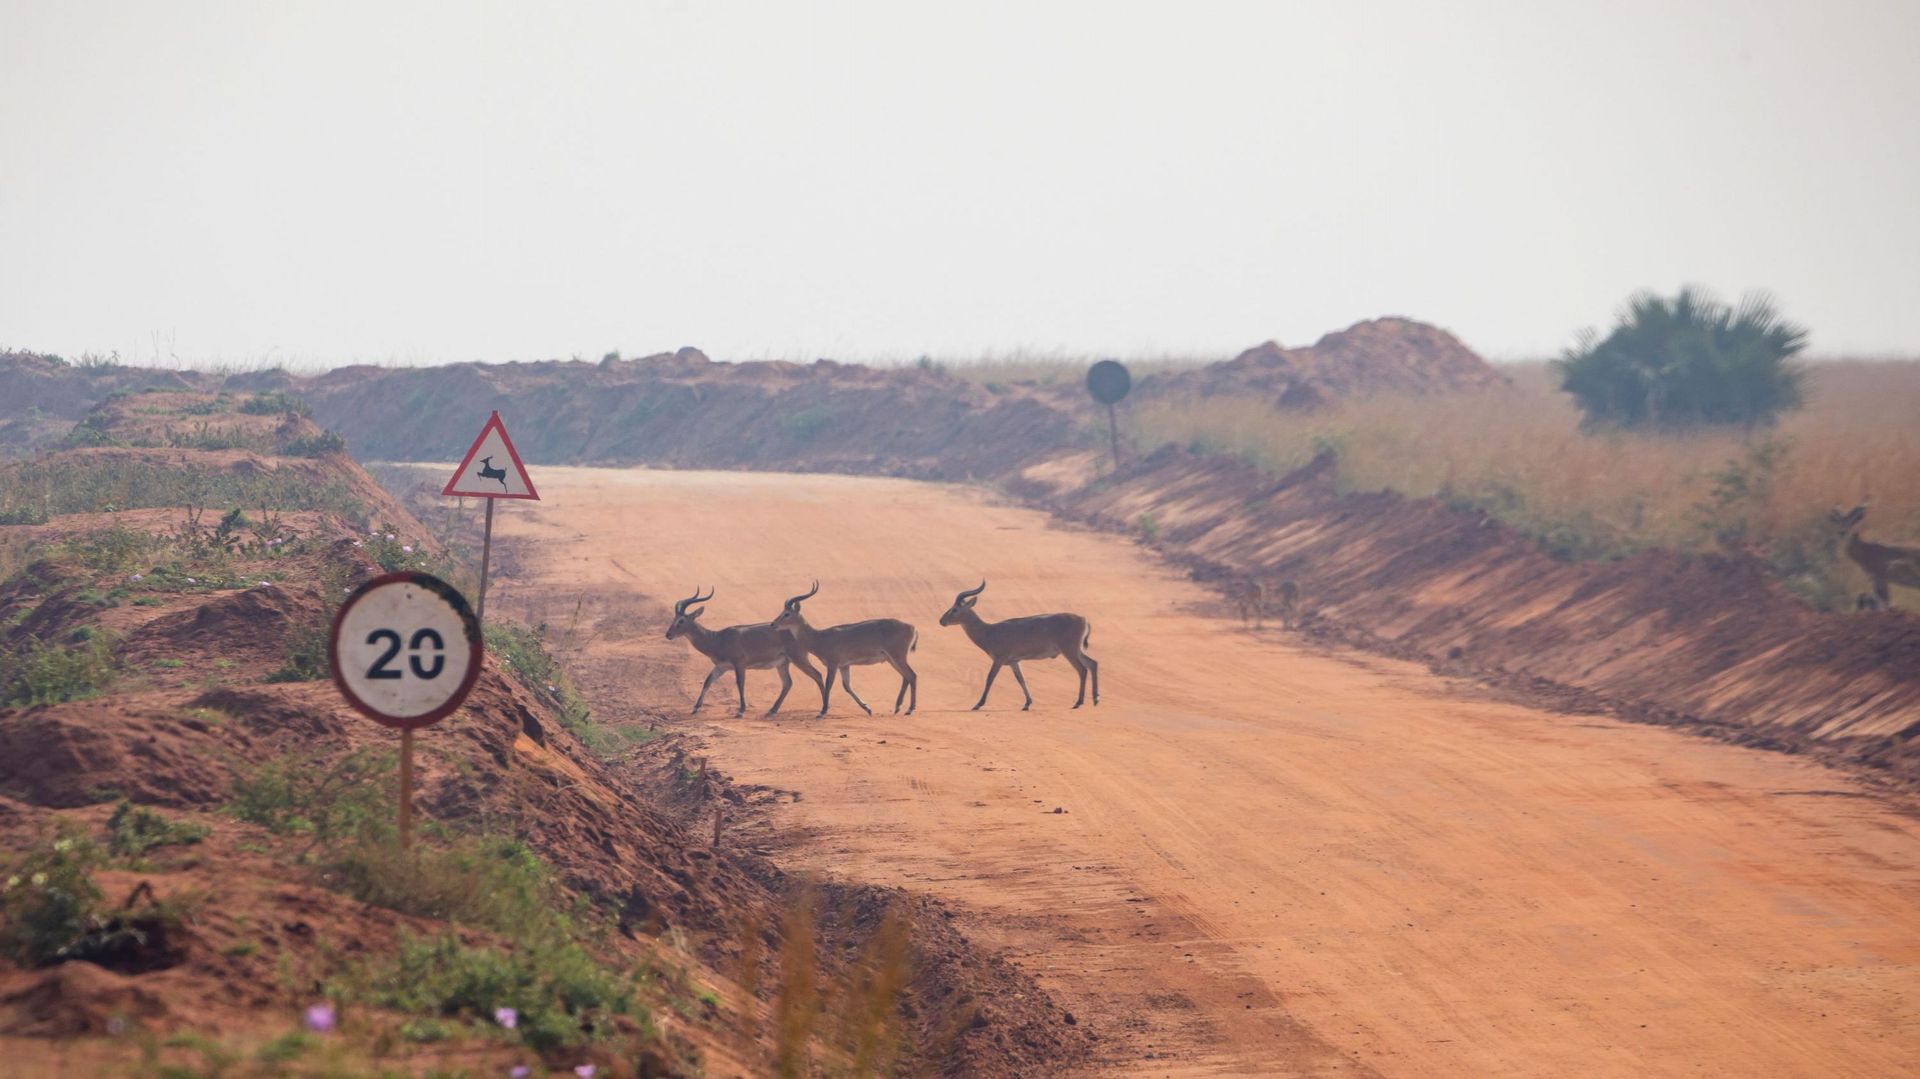 Des antilopes traversent une route à l'intérieur du parc national de Murchison Falls dans le nord-ouest de l'Ouganda, le 22 février 2023. C'est dans cette région riche en biodiversité que le géant pétrolier français TotalEnergies développe le champ pétrol